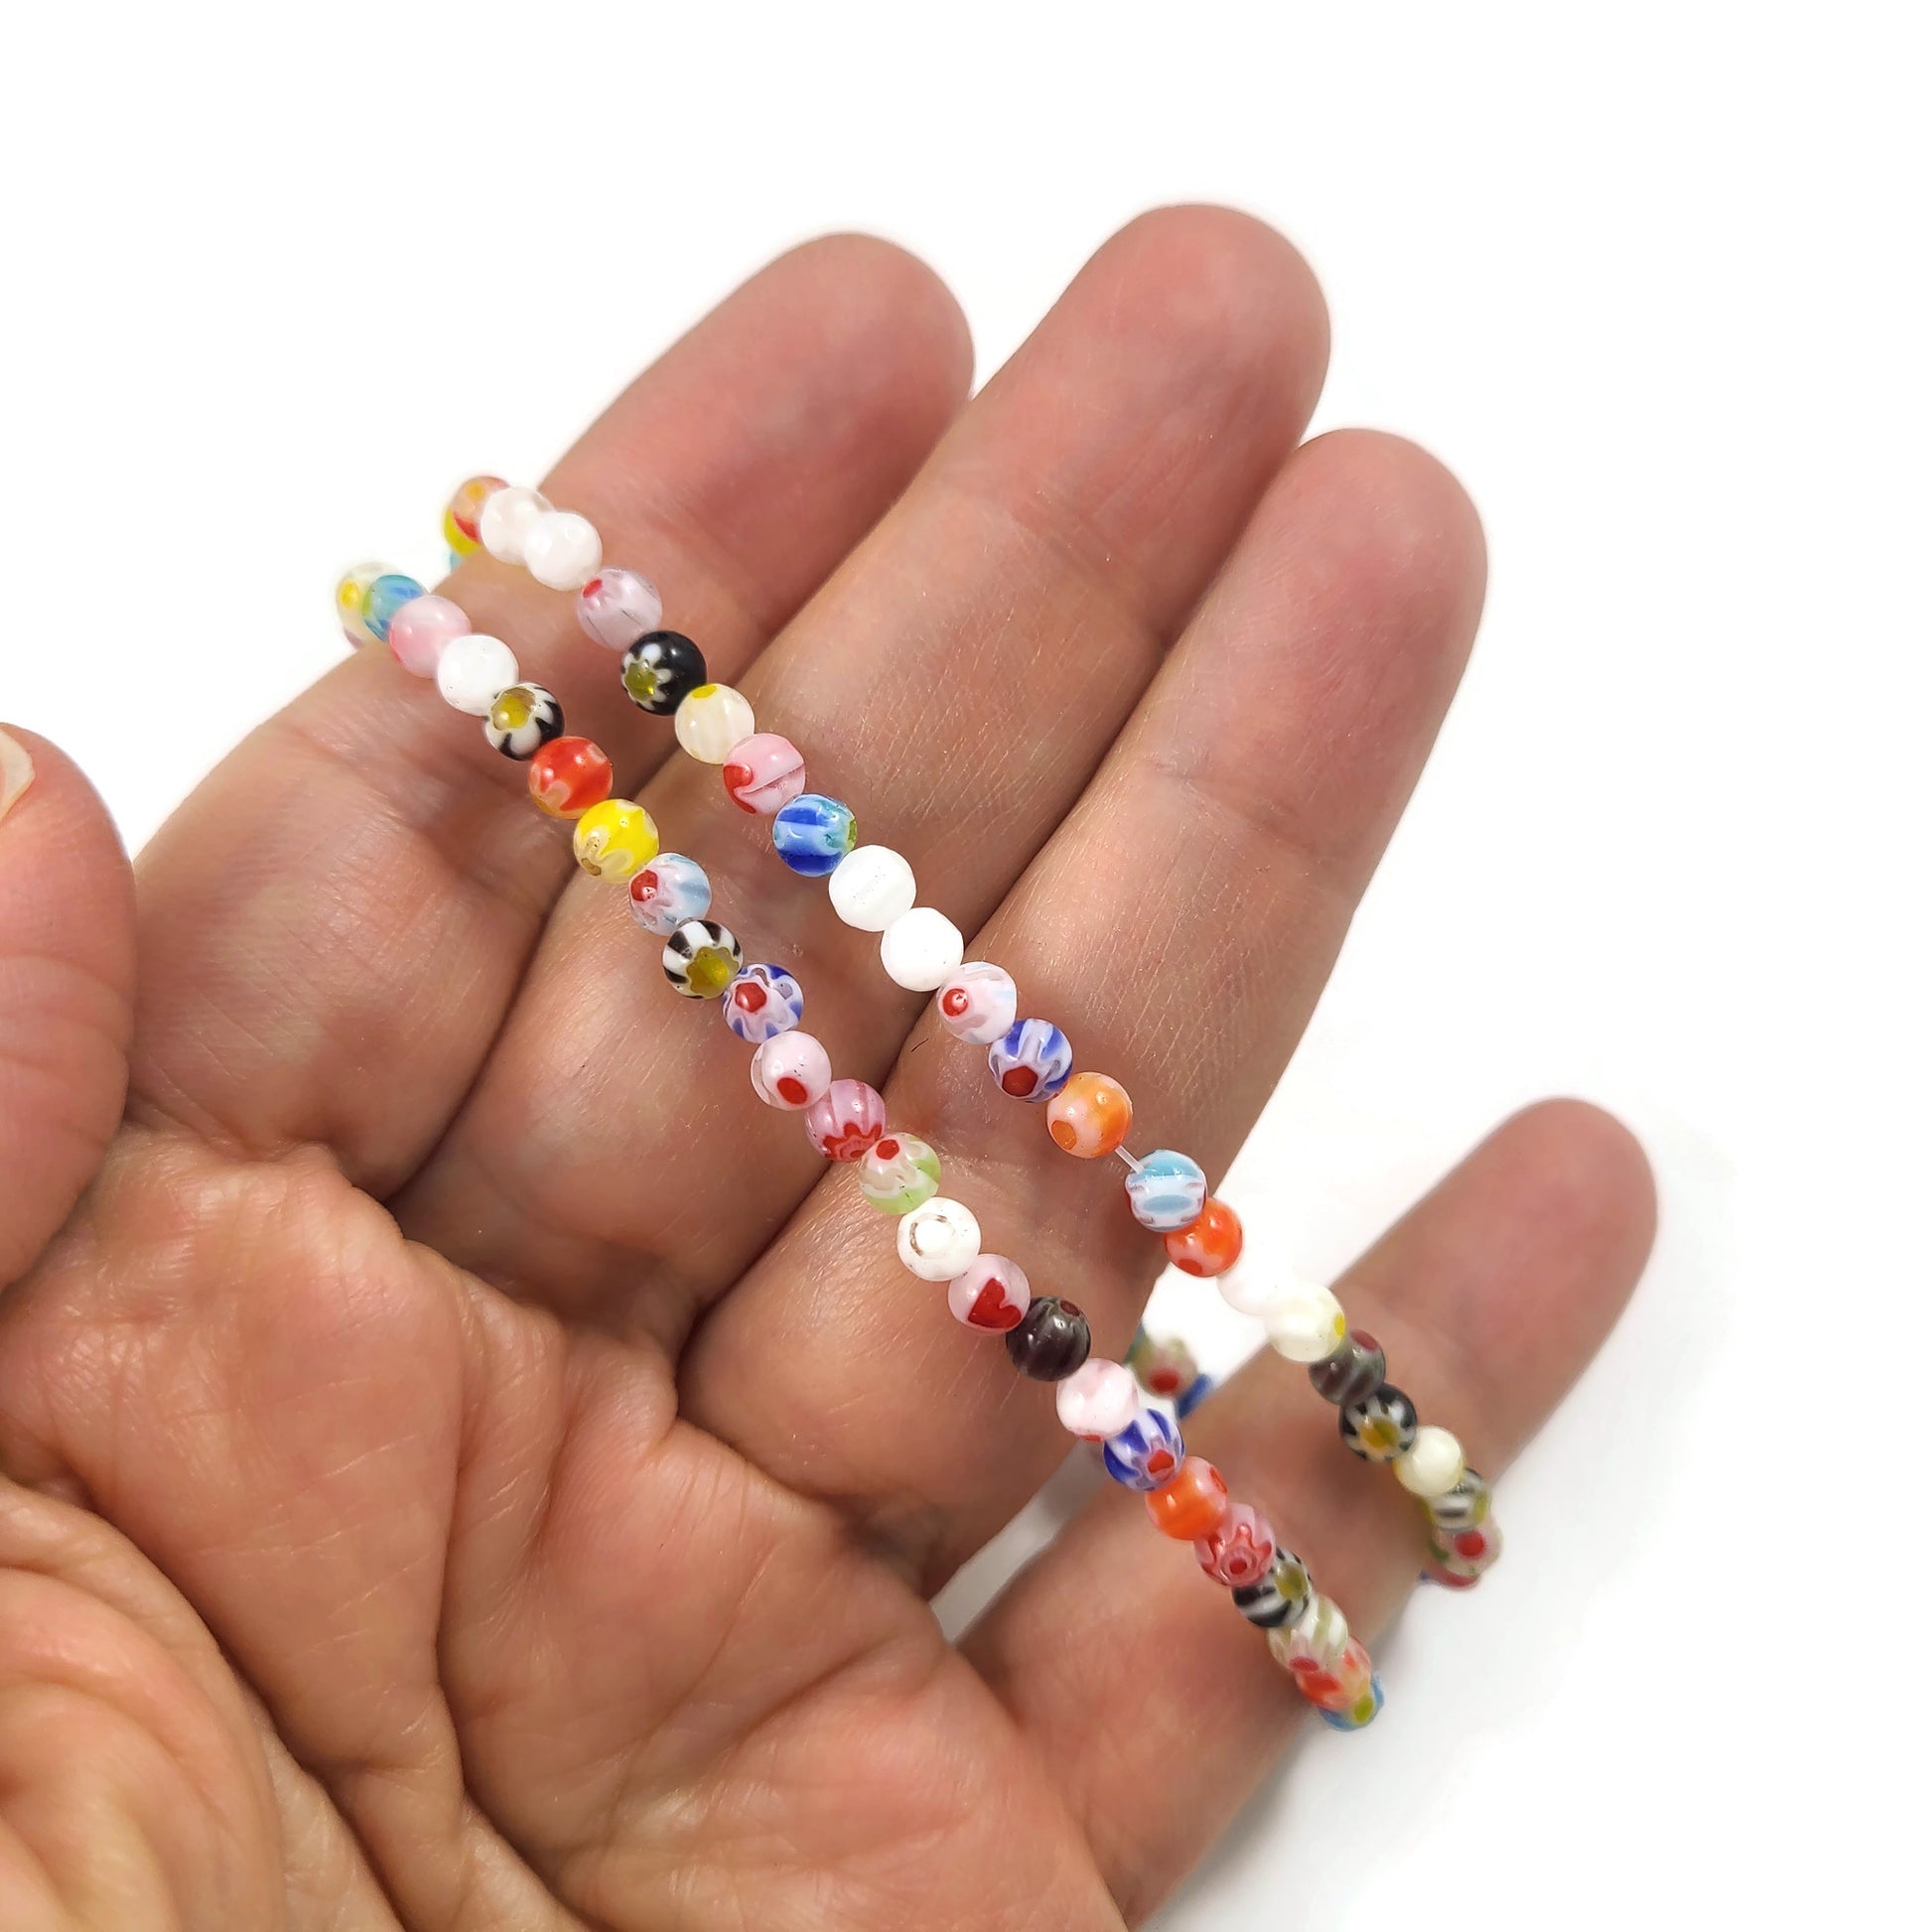 Perles de verre Millefiori, Couleurs mélangées assorties, 4mm, 6mm, 8mm